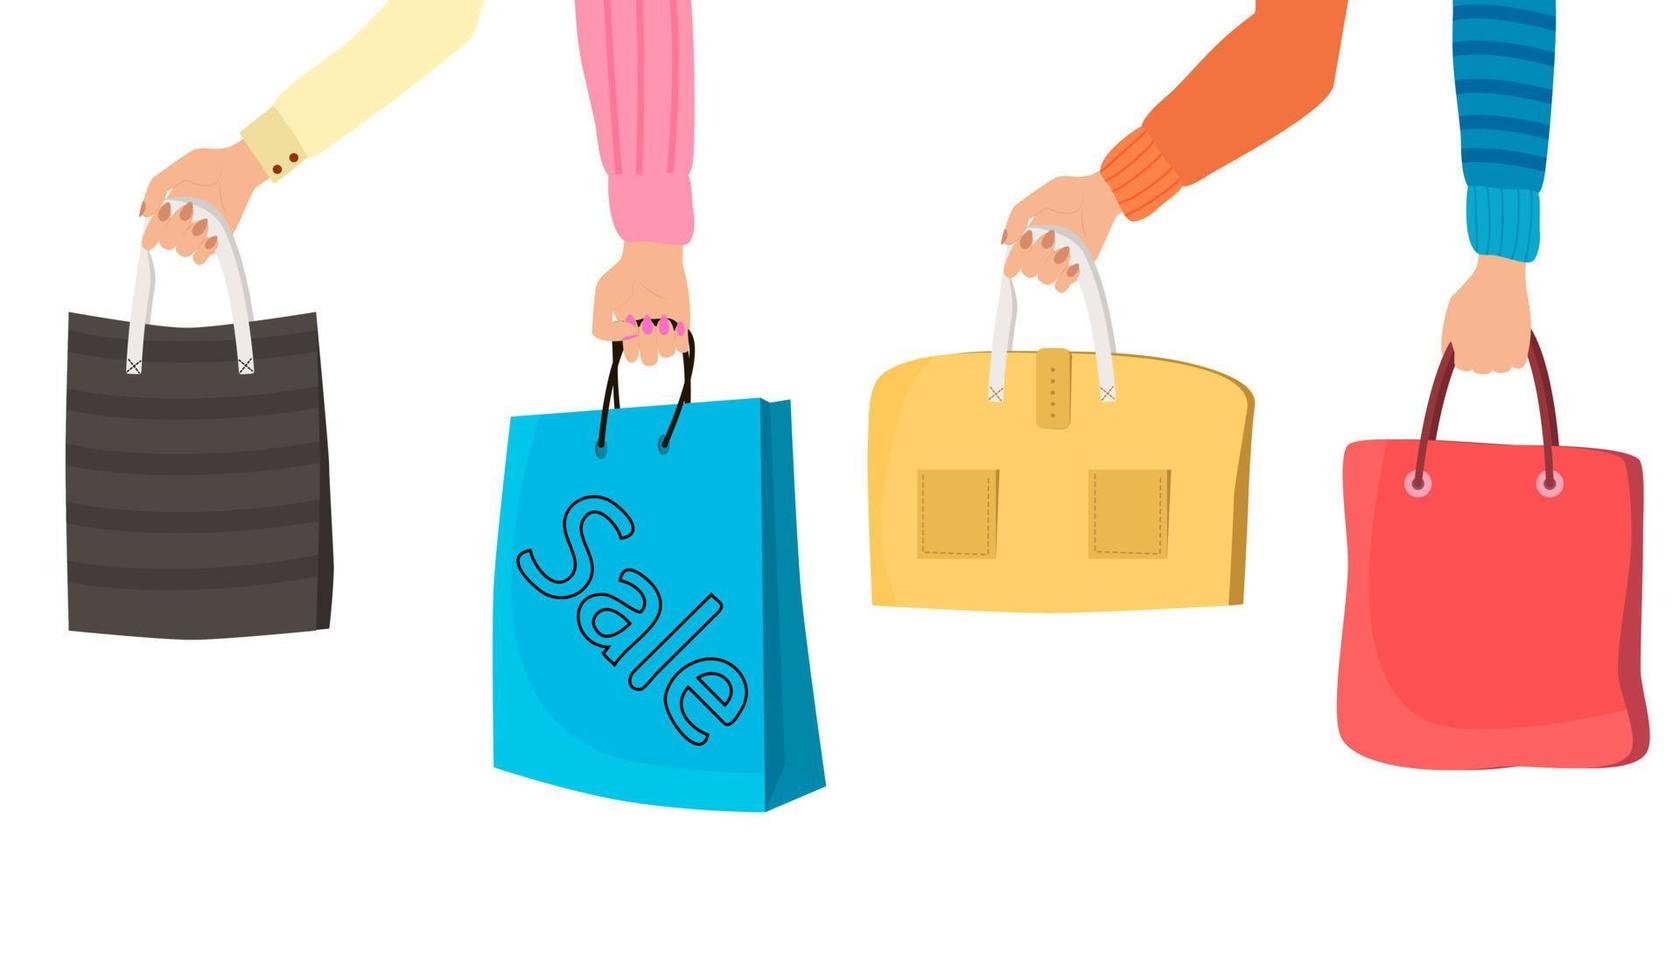 manos sosteniendo bolsas de compras después de una venta. el concepto de intercambiar la alegría de comprar hermosos bolsos y paquetes. ilustración vectorial plana. vector